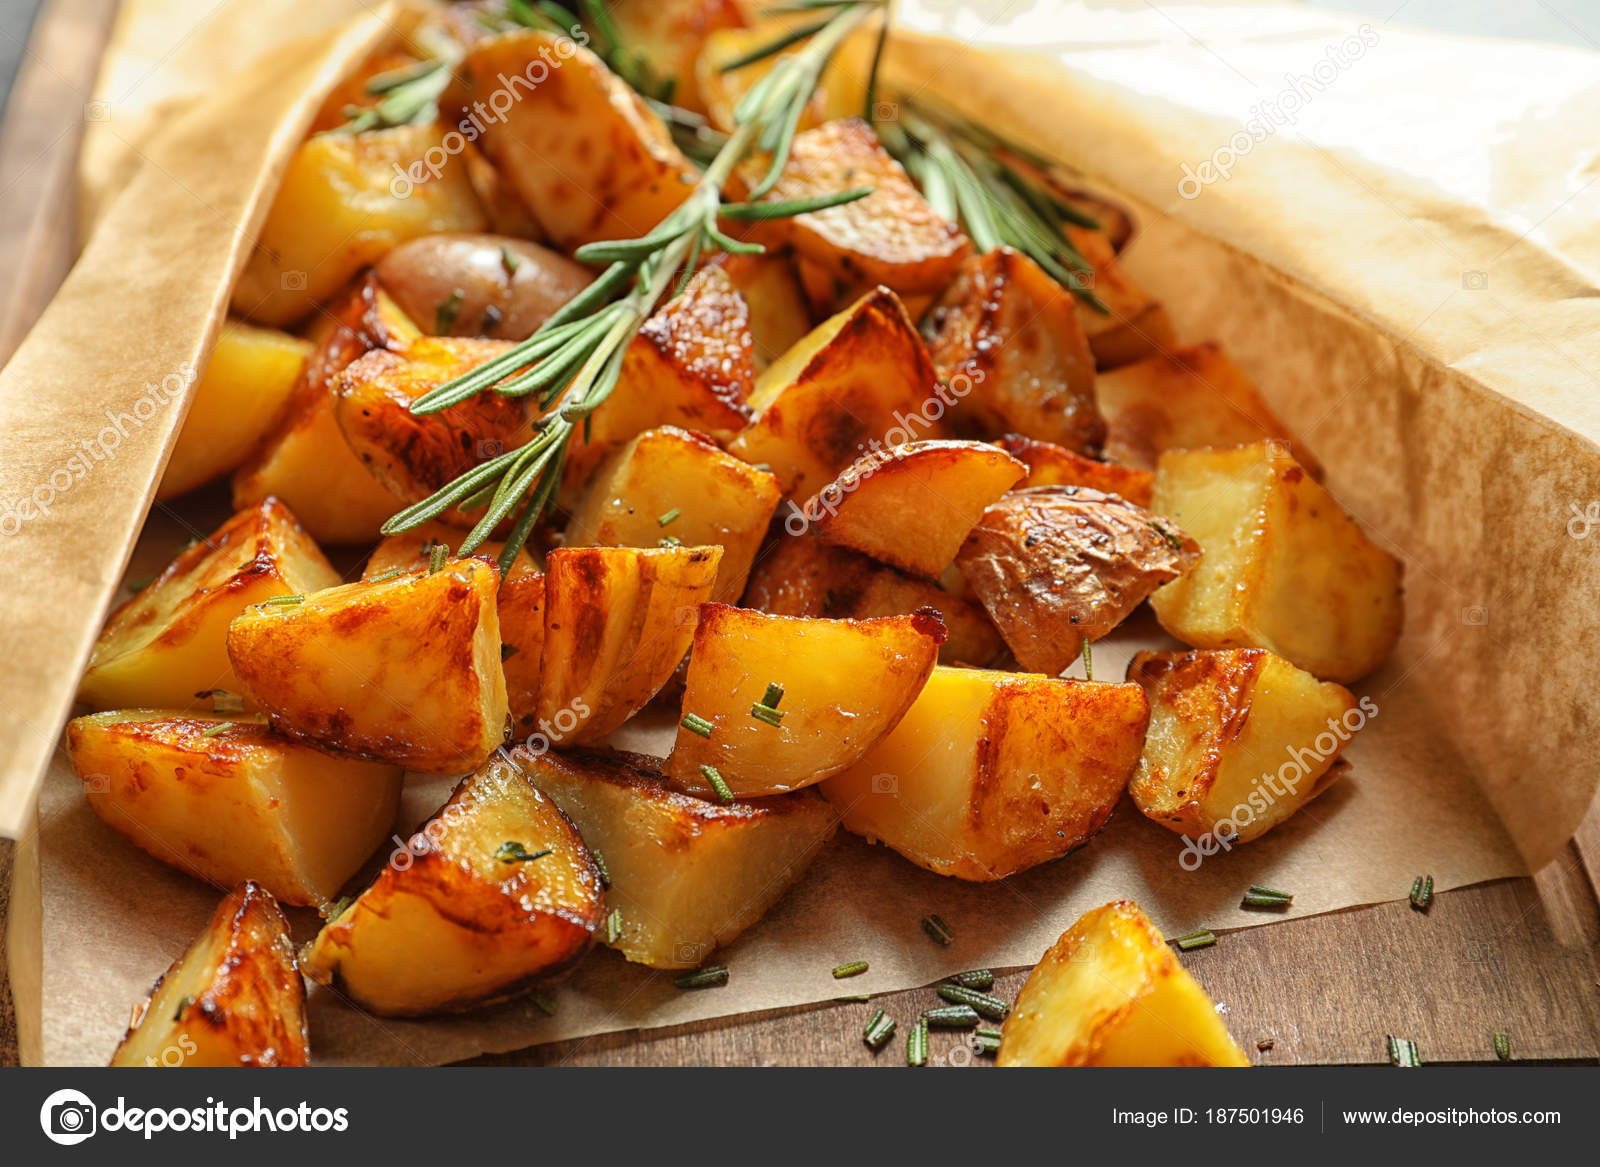 Пряная картошка. Картошка в рукаве. Картошка в духовке. Запеченный картофель ломтиками. Печеный картофель дольками.